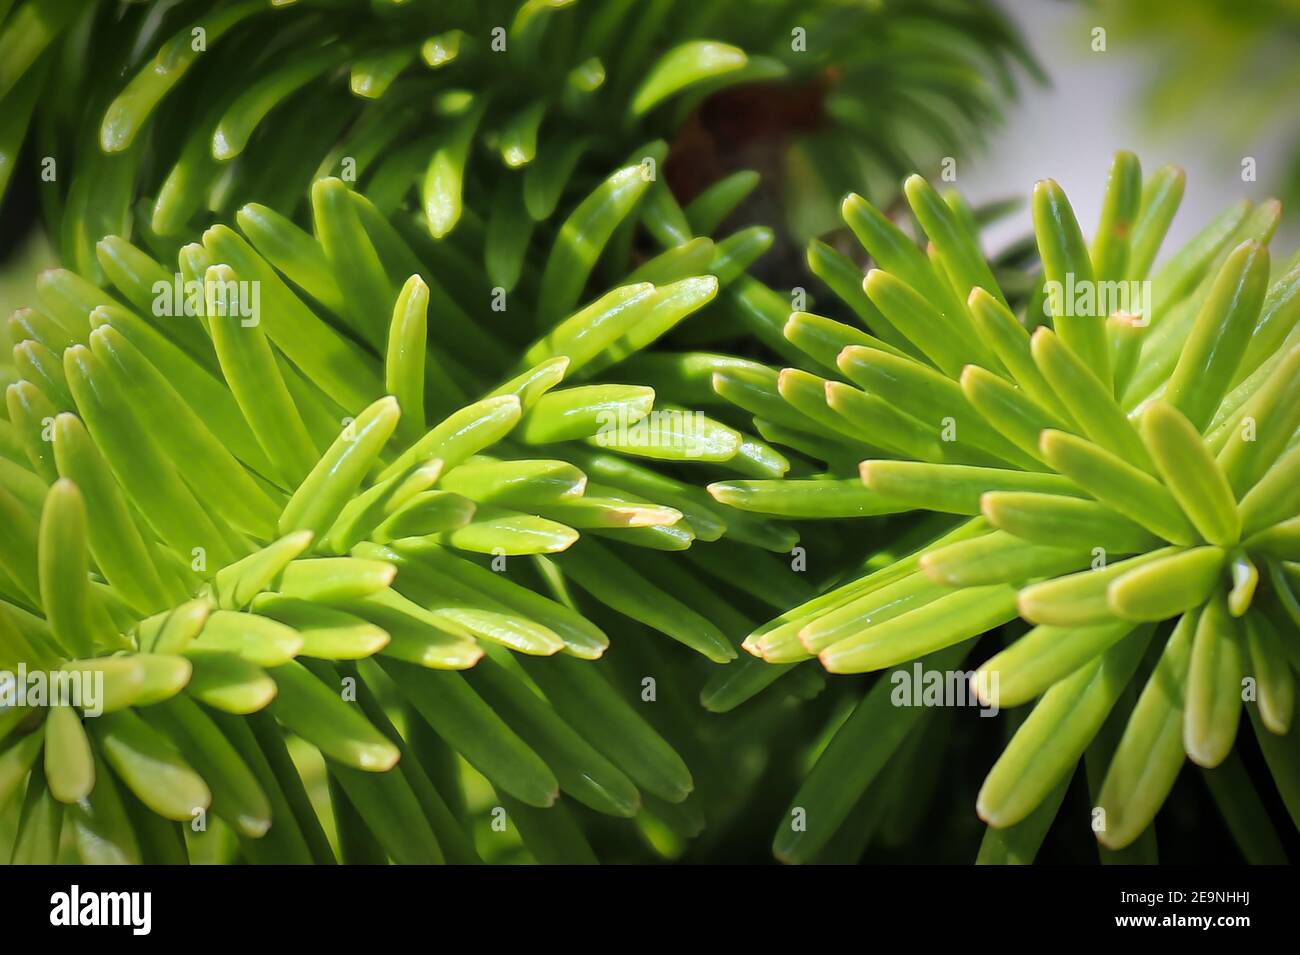 Closeup of the needles on a dwarf balsam fir. Stock Photo